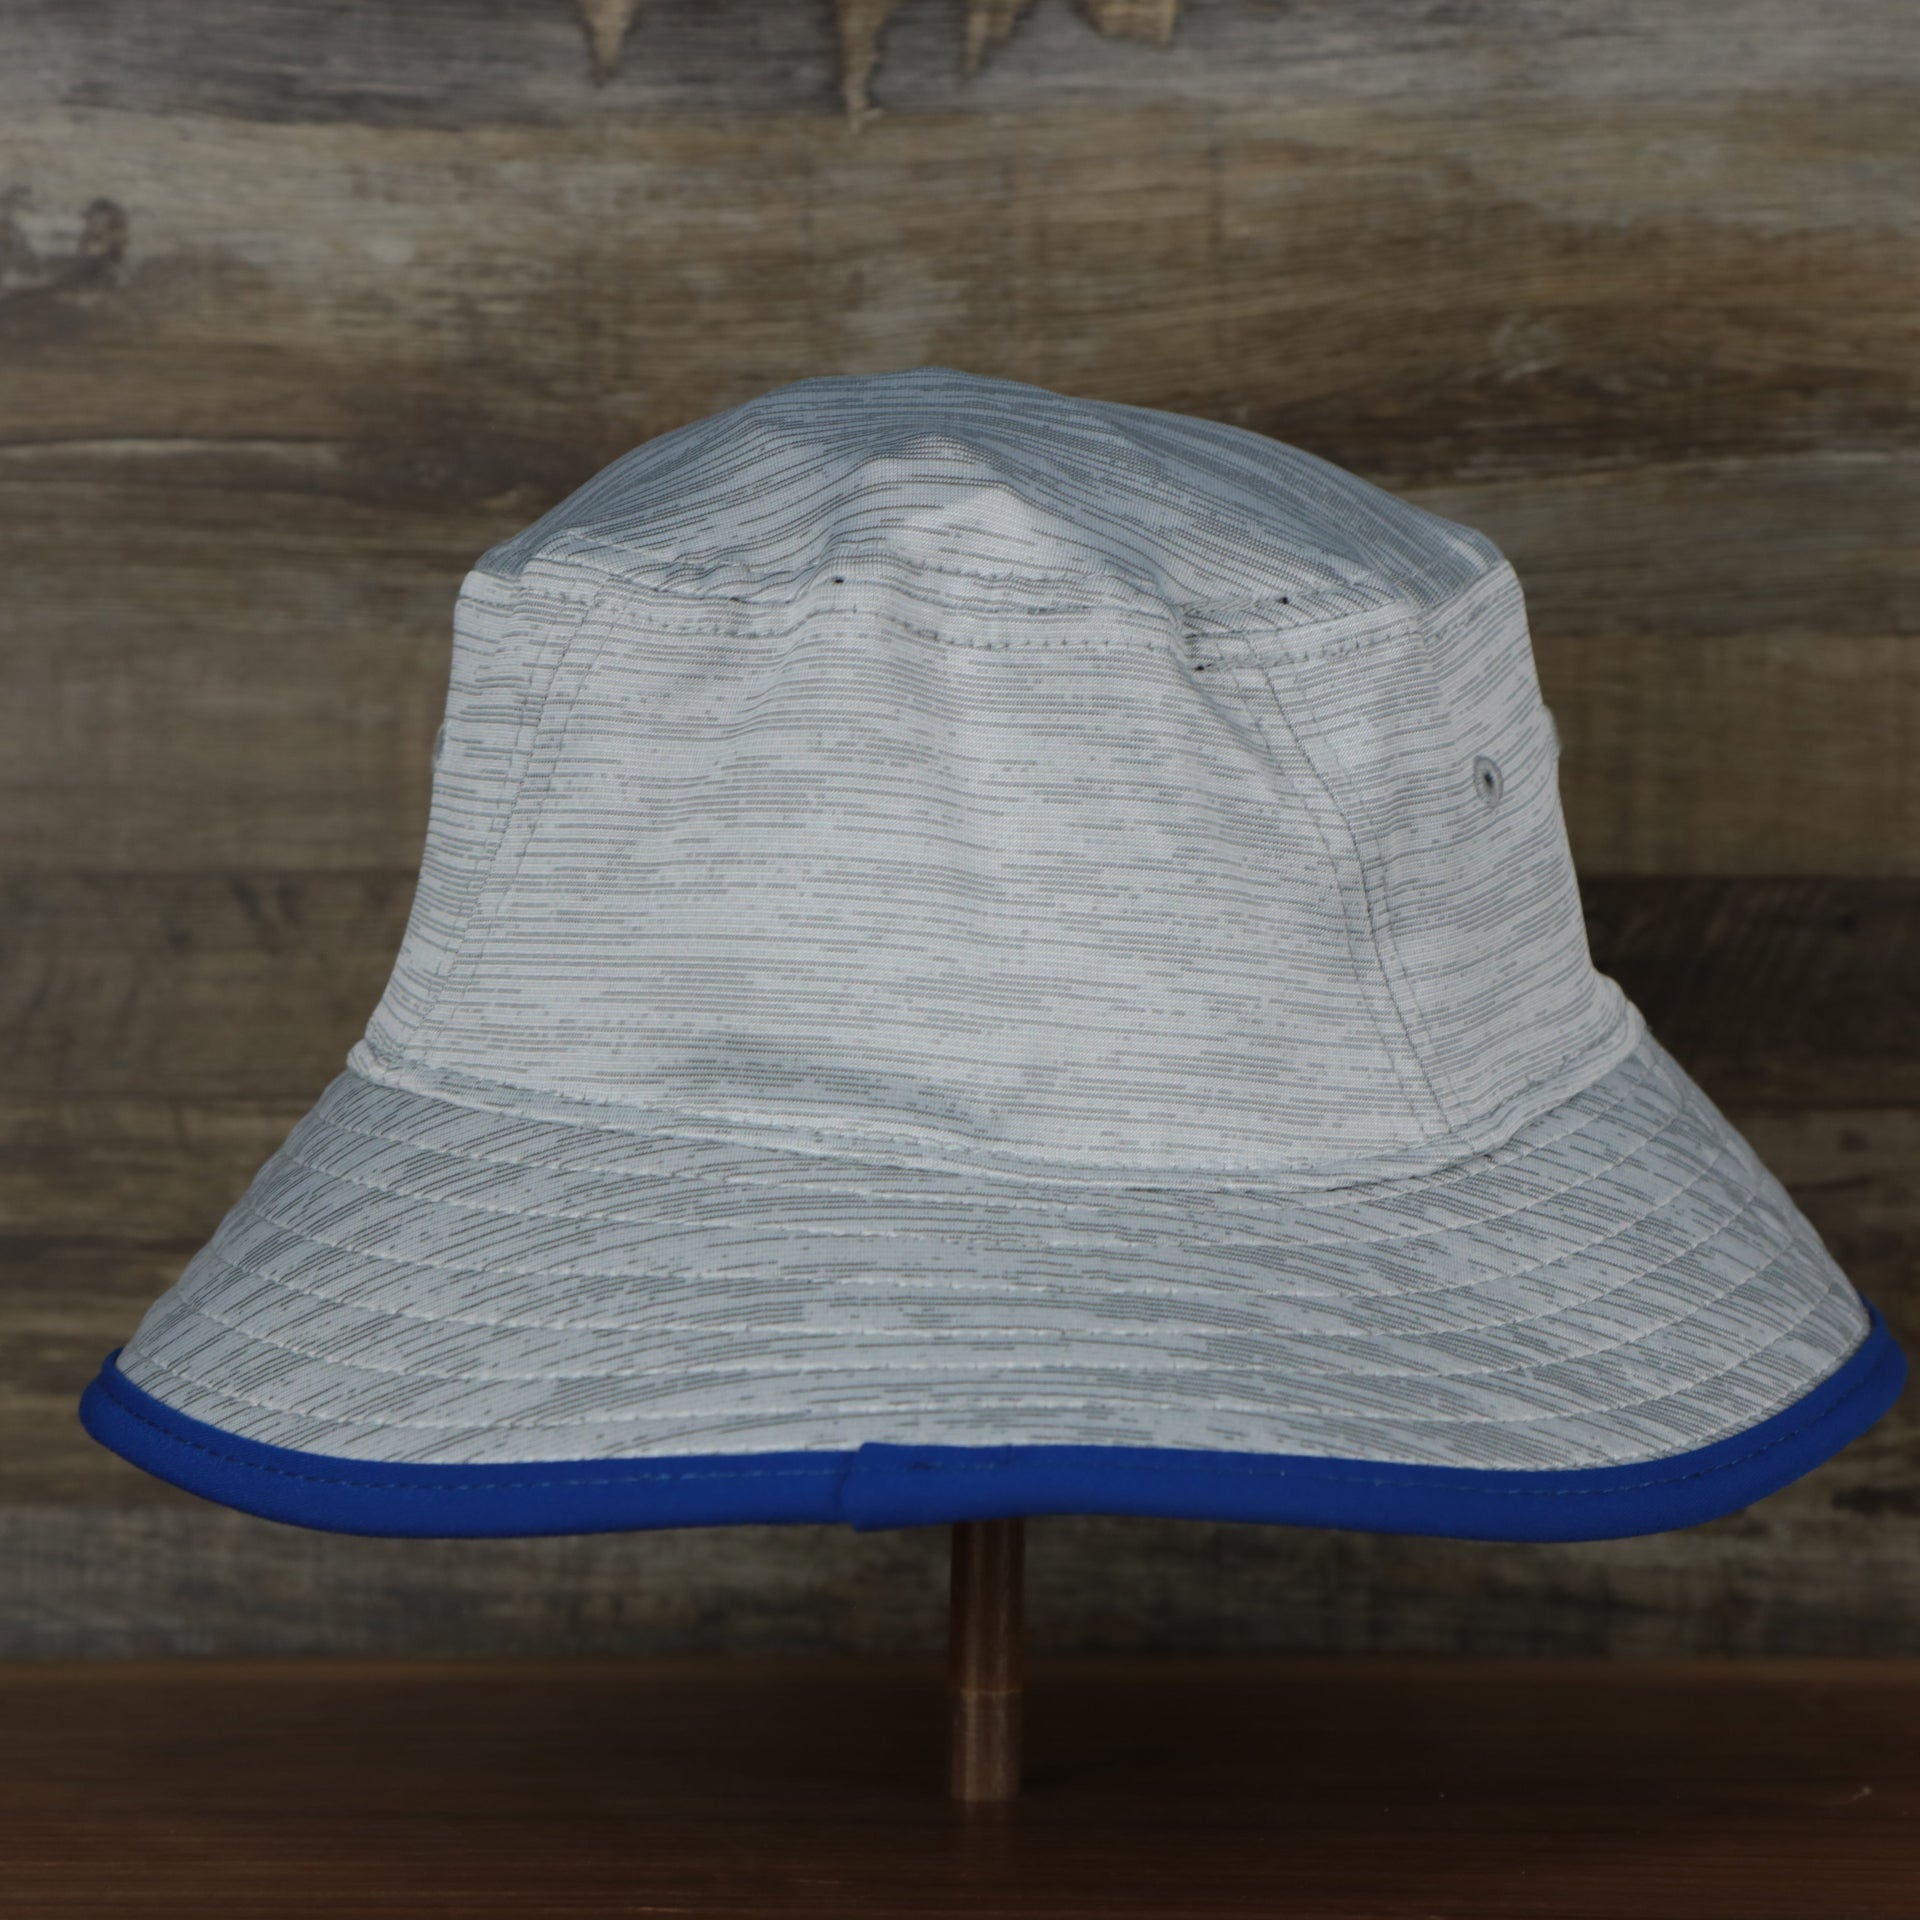 The backside of the Philadelphia 76ers New Era Bucket Hat